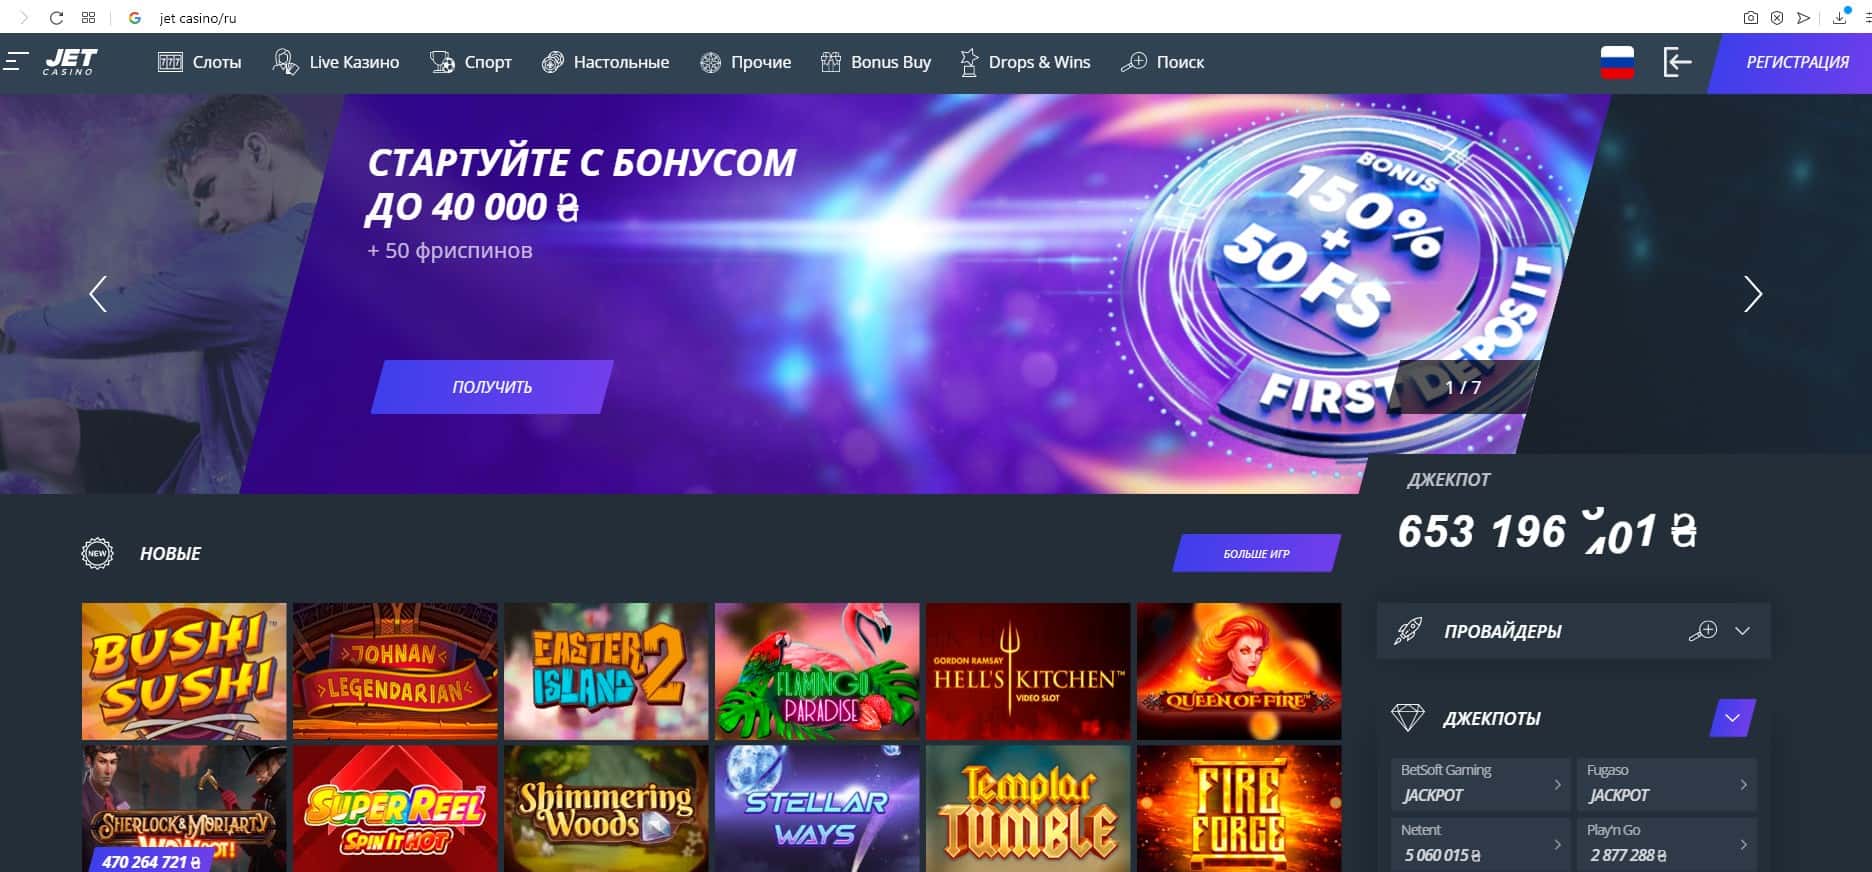 Jet casino онлайн официальный сайт: игра рулетки и слотов ведущего казино